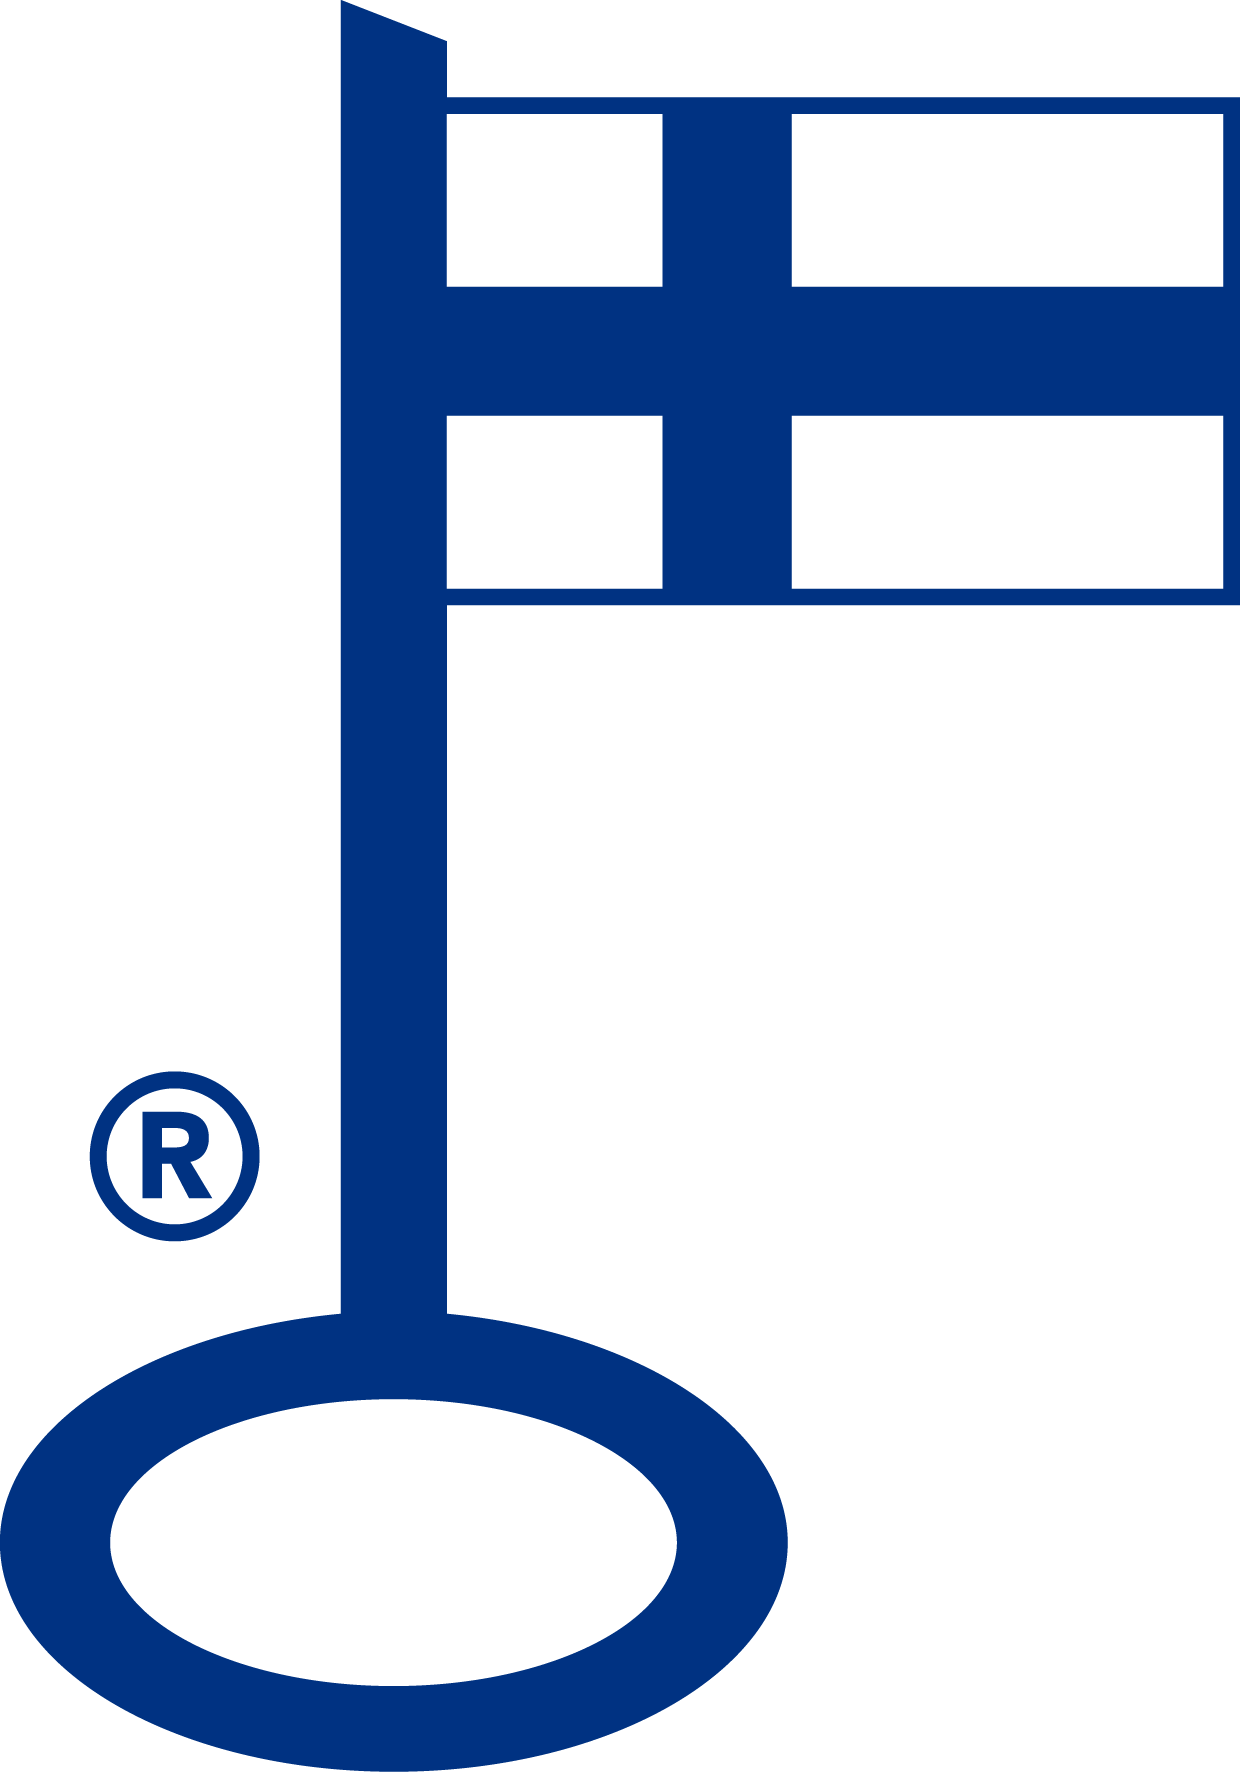 Tehty Suomessa lippu